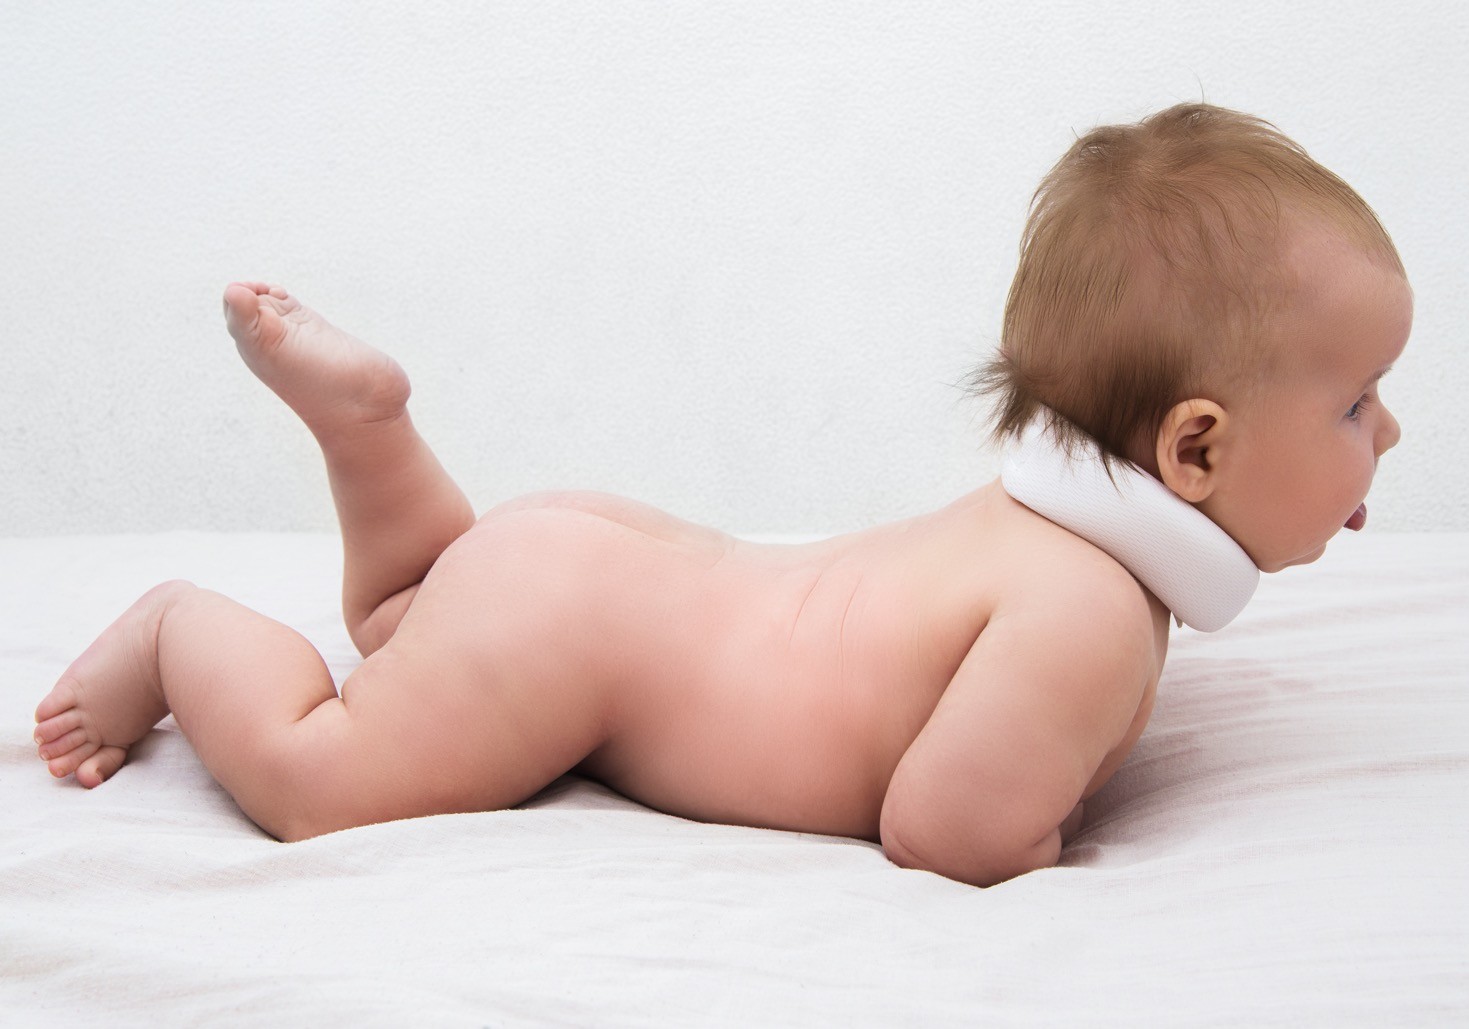 Tortikolis kod beba je relativno česta pojava i može se povući ako se reaguje na vreme, uz odgavarujće vežbe.